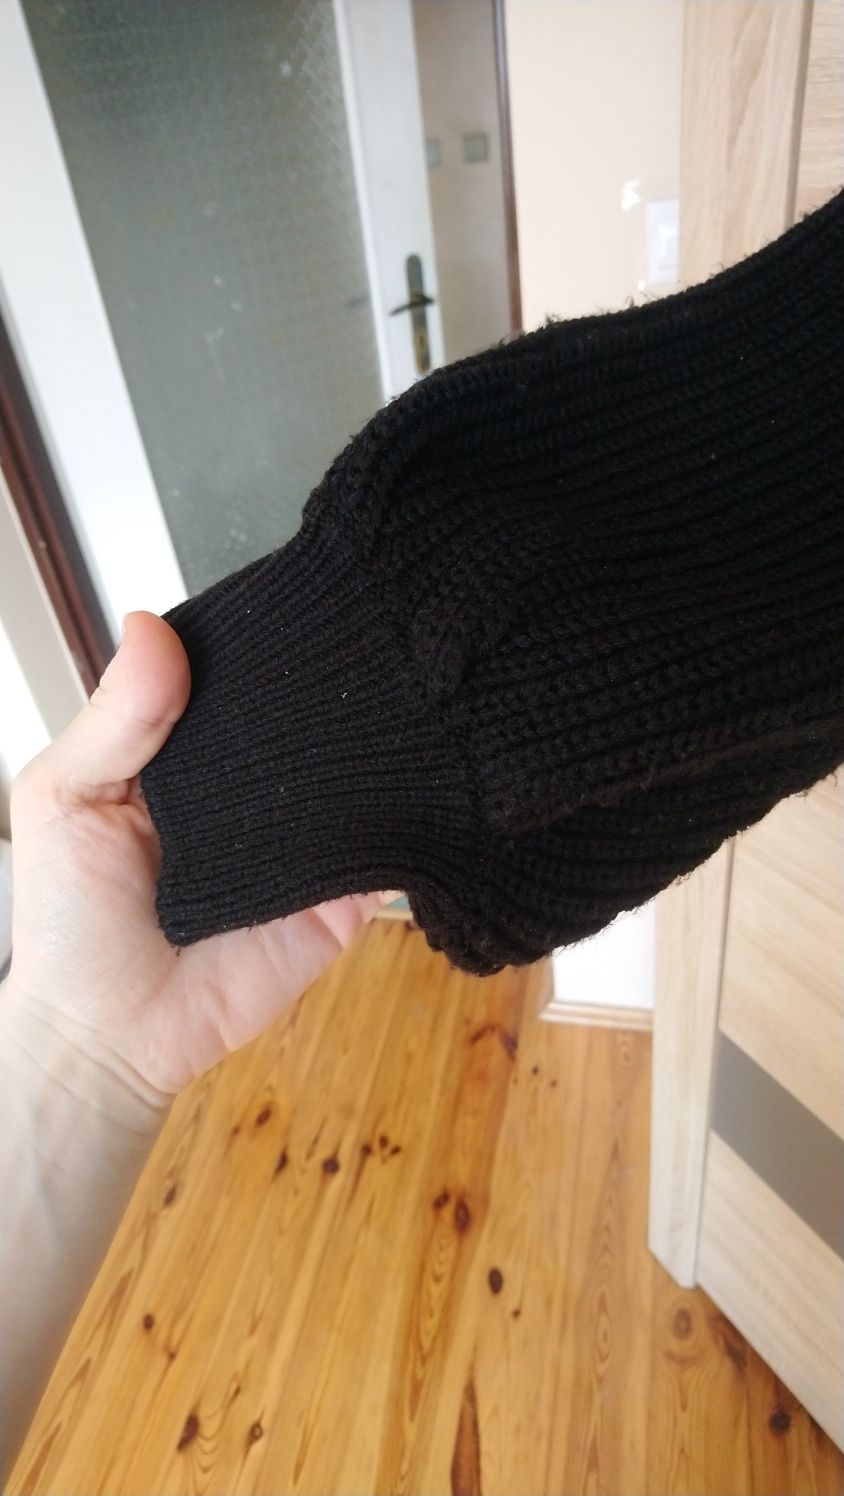 Gruby czarny luźny sweter dziewczęcy rozmiar M Cropp